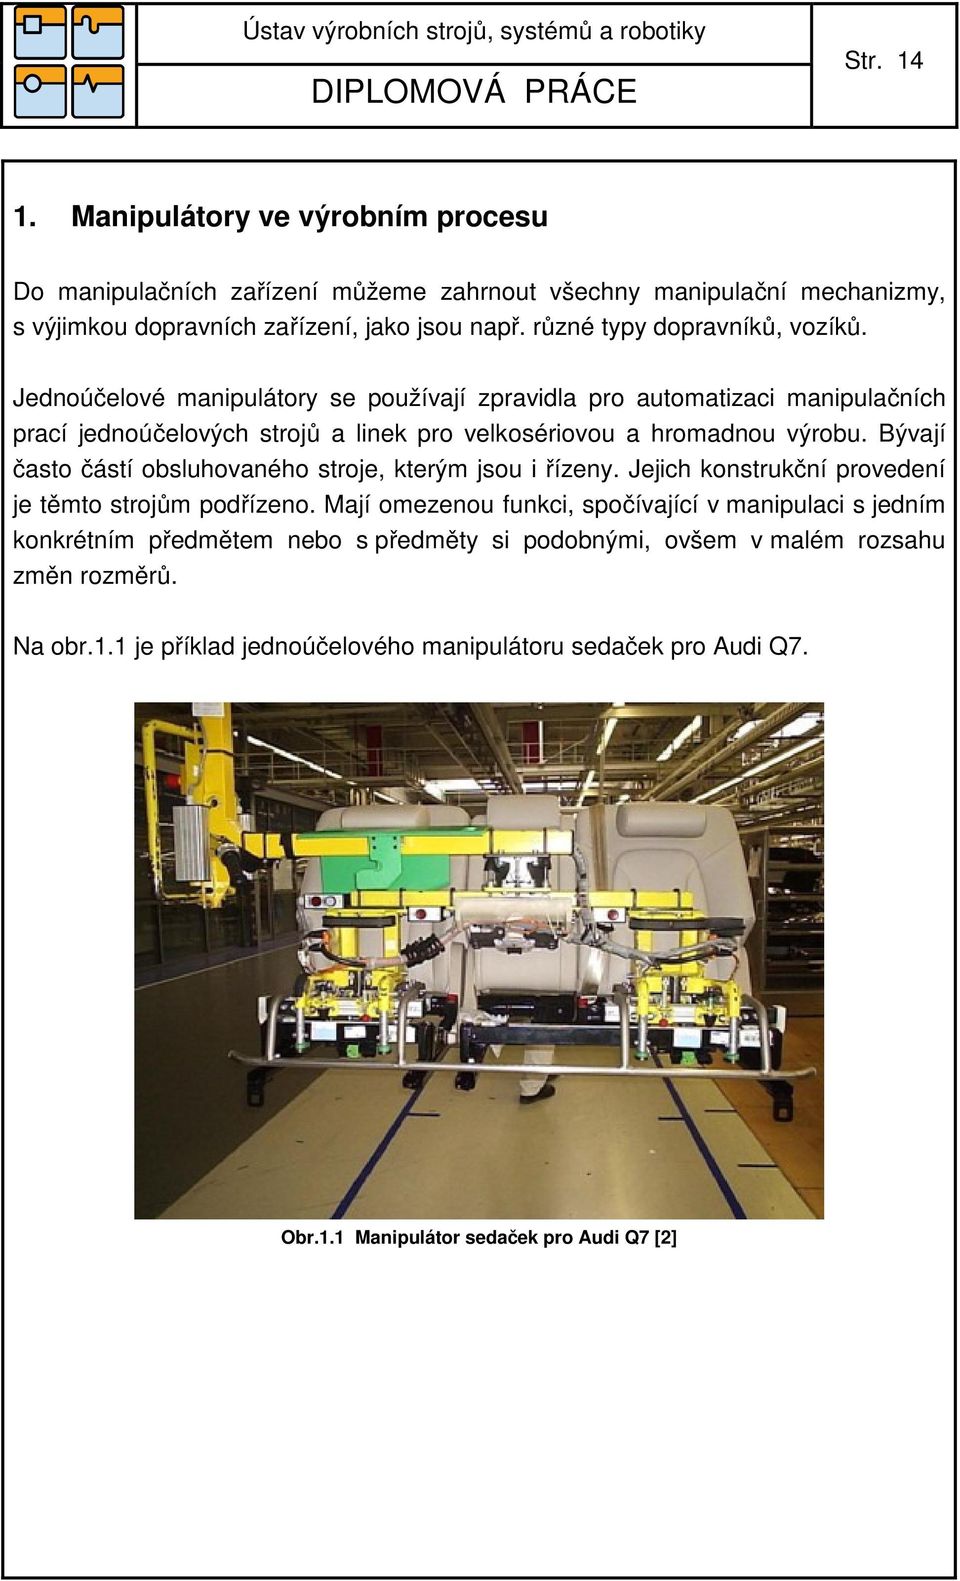 Jednoúčelové manipulátory se používají zpravidla pro automatizaci manipulačních prací jednoúčelových strojů a linek pro velkosériovou a hromadnou výrobu.